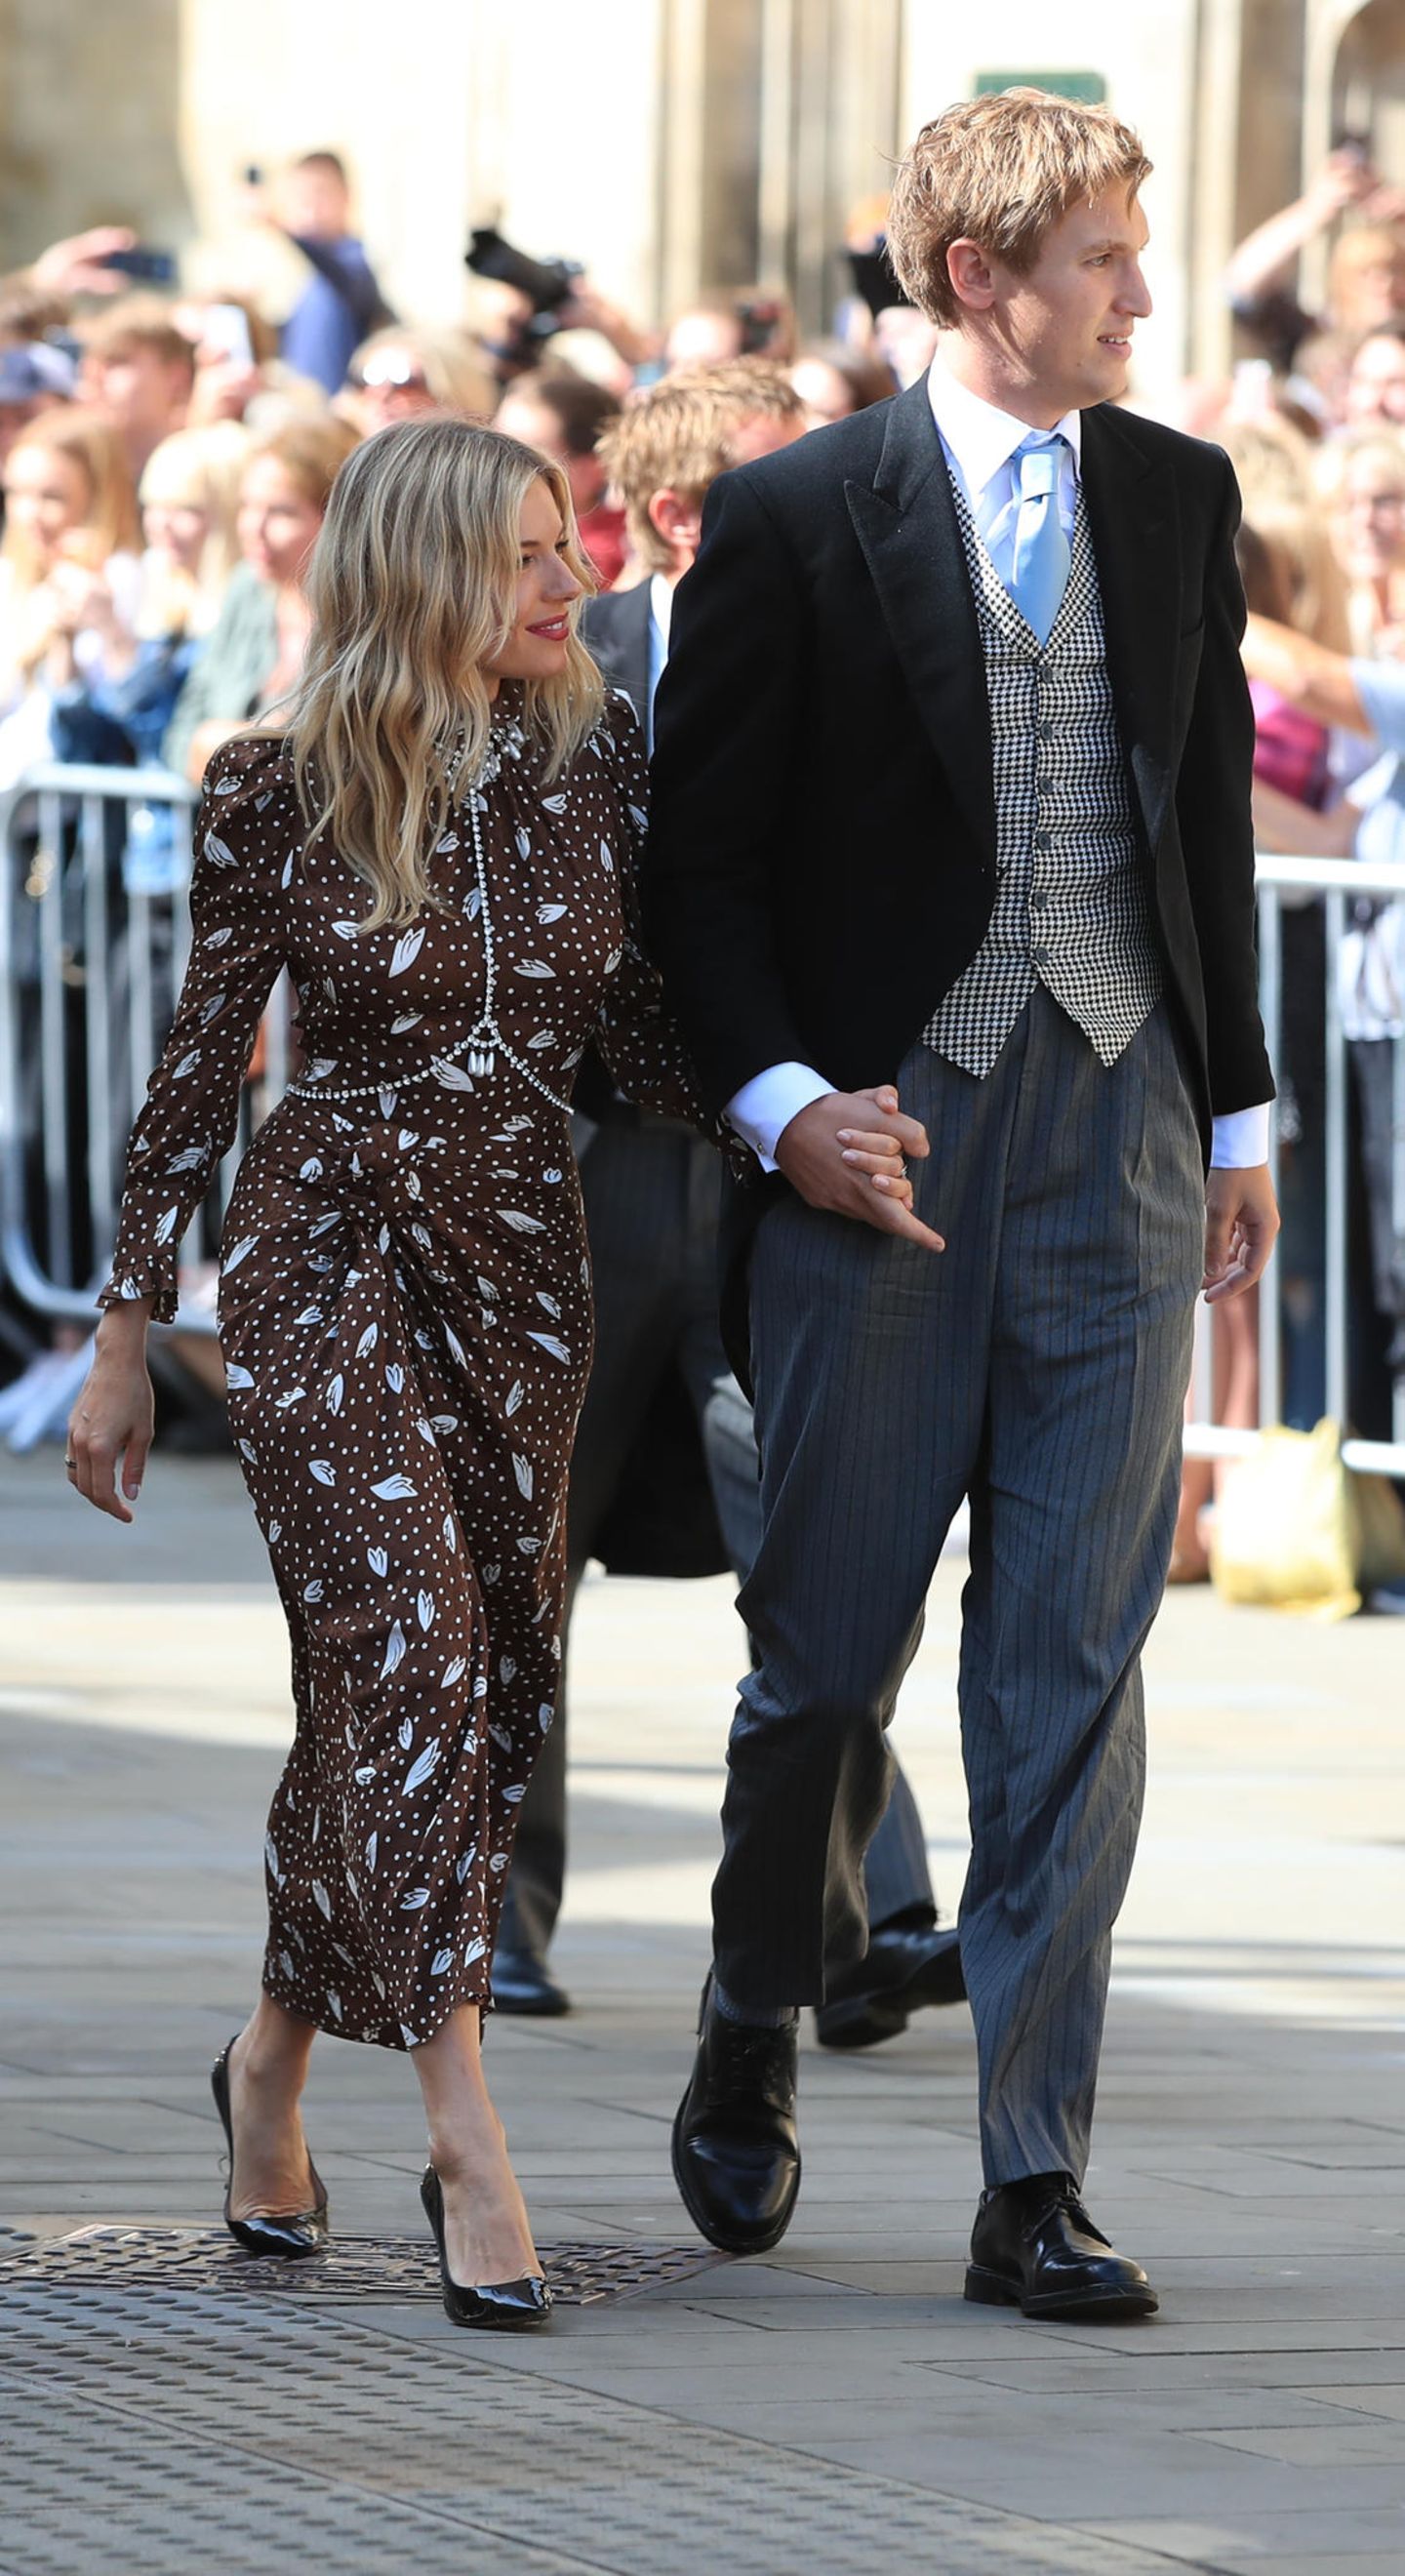 Schauspielerin Sienna Miller zeigt uns, dass dunkelbraun sehr wohl schön sein kann! Das Dress von Alessandra Rich steht der Fashionista einfach hervorragend! Sie erscheint an der Seite ihres Freundes Lucas Zwirner. 